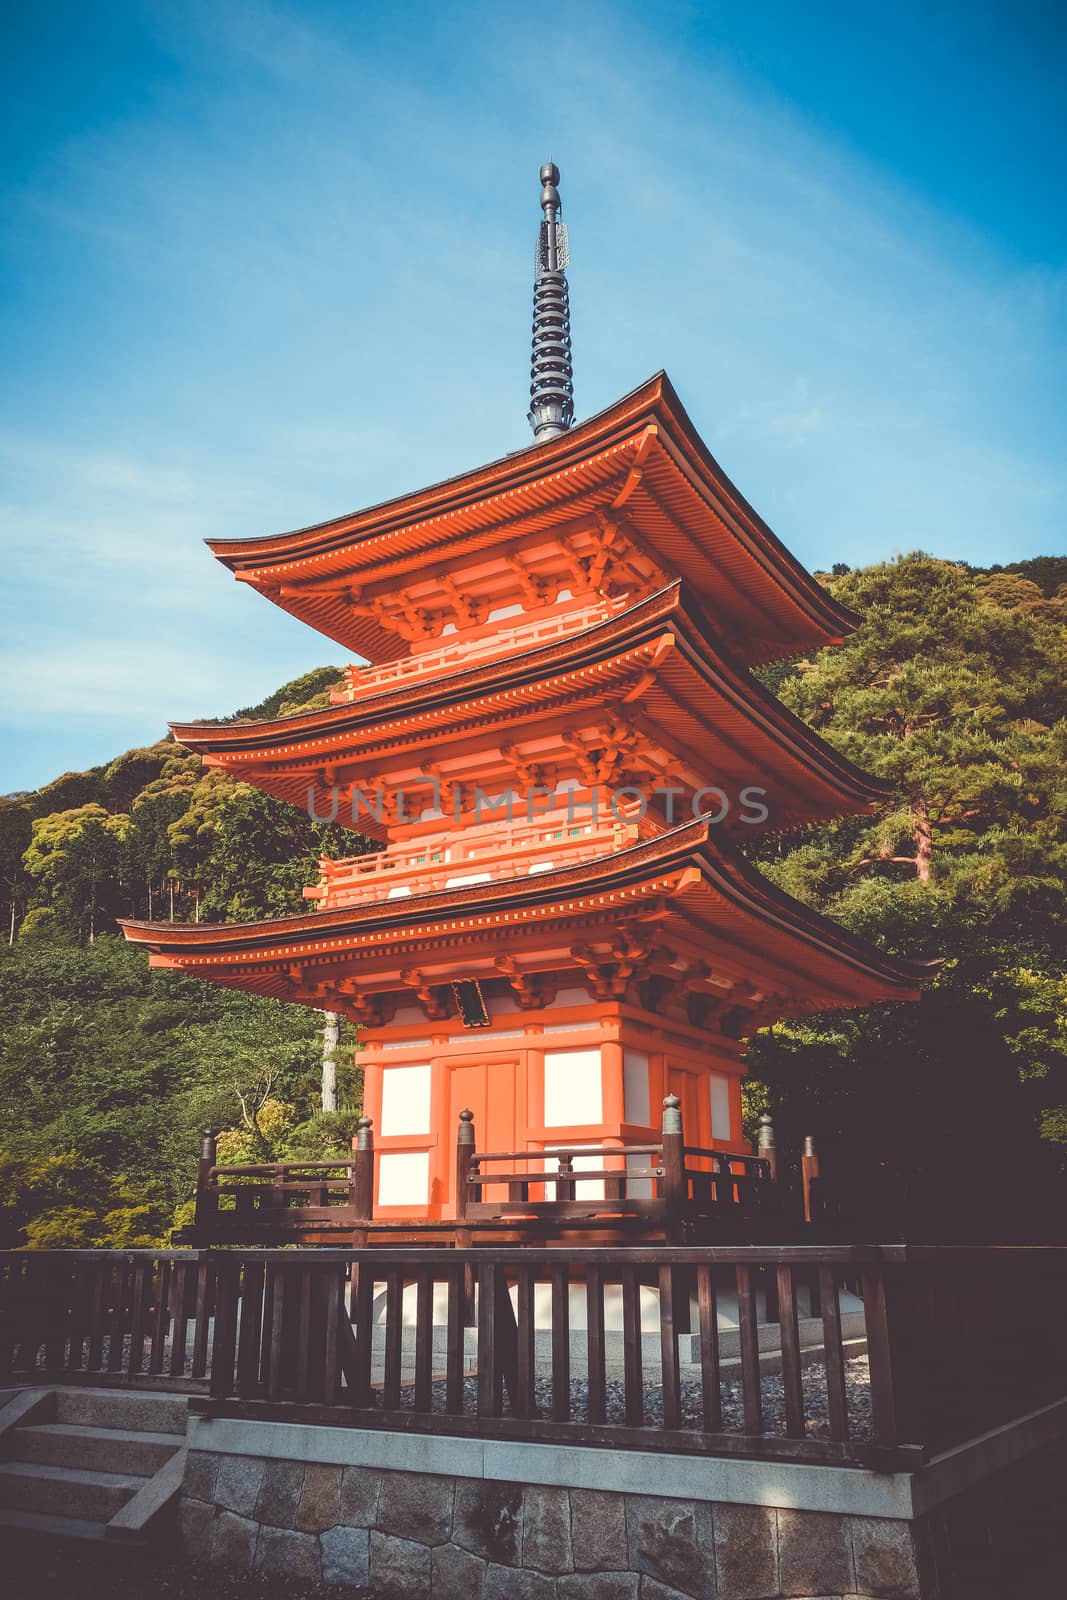 Pagoda at the kiyomizu-dera temple, Kyoto, Japan by daboost